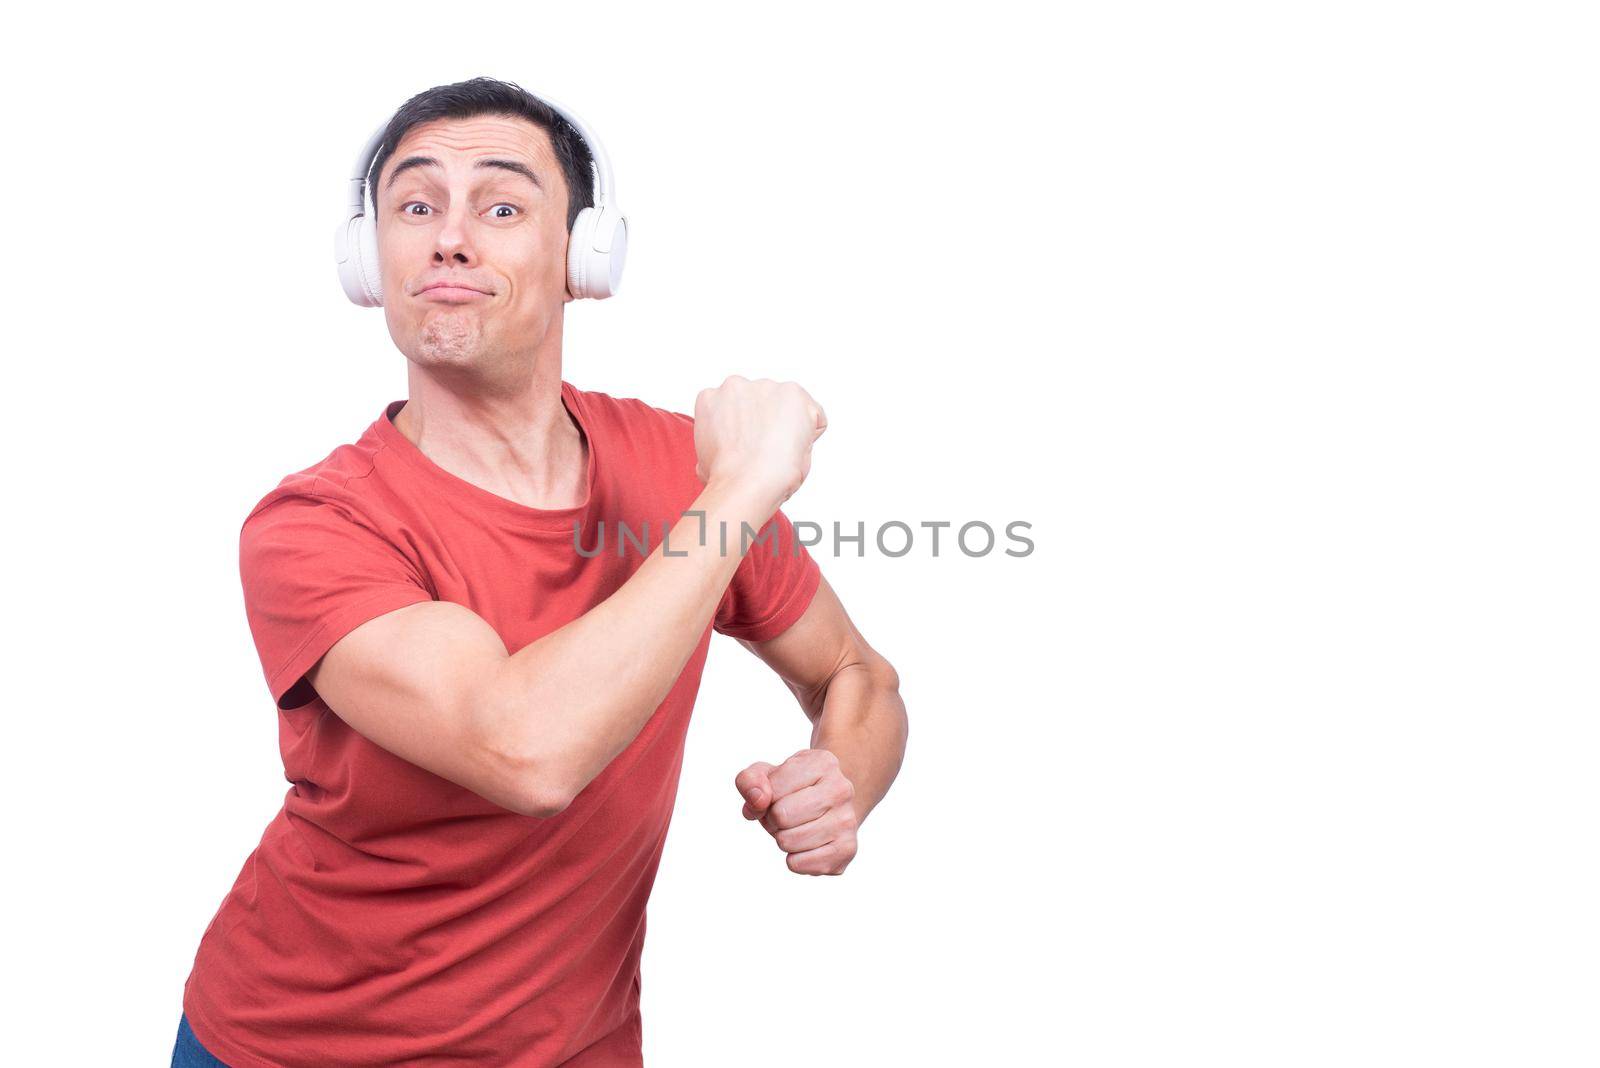 Delightful guy in headphones dancing in studio by ivanmoreno